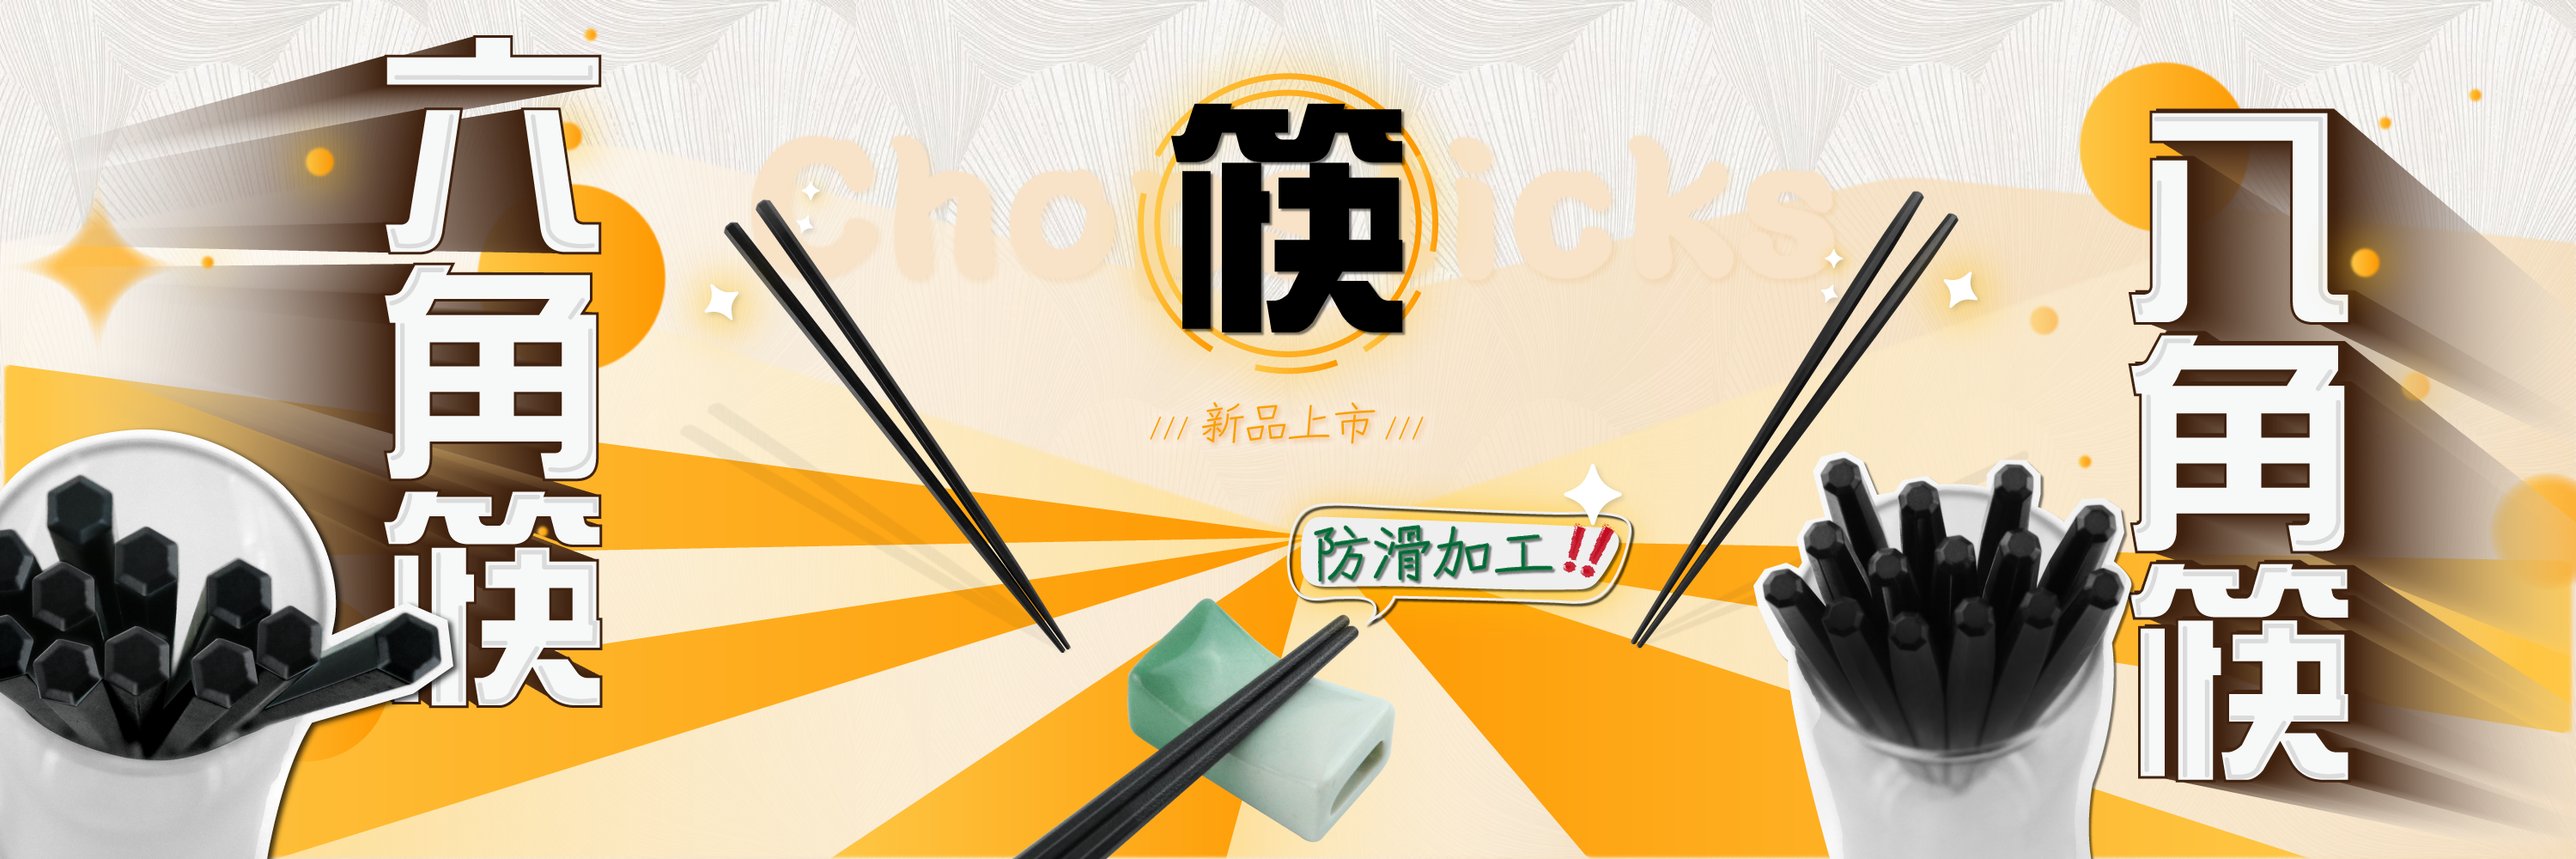 首頁-六角筷&八角筷